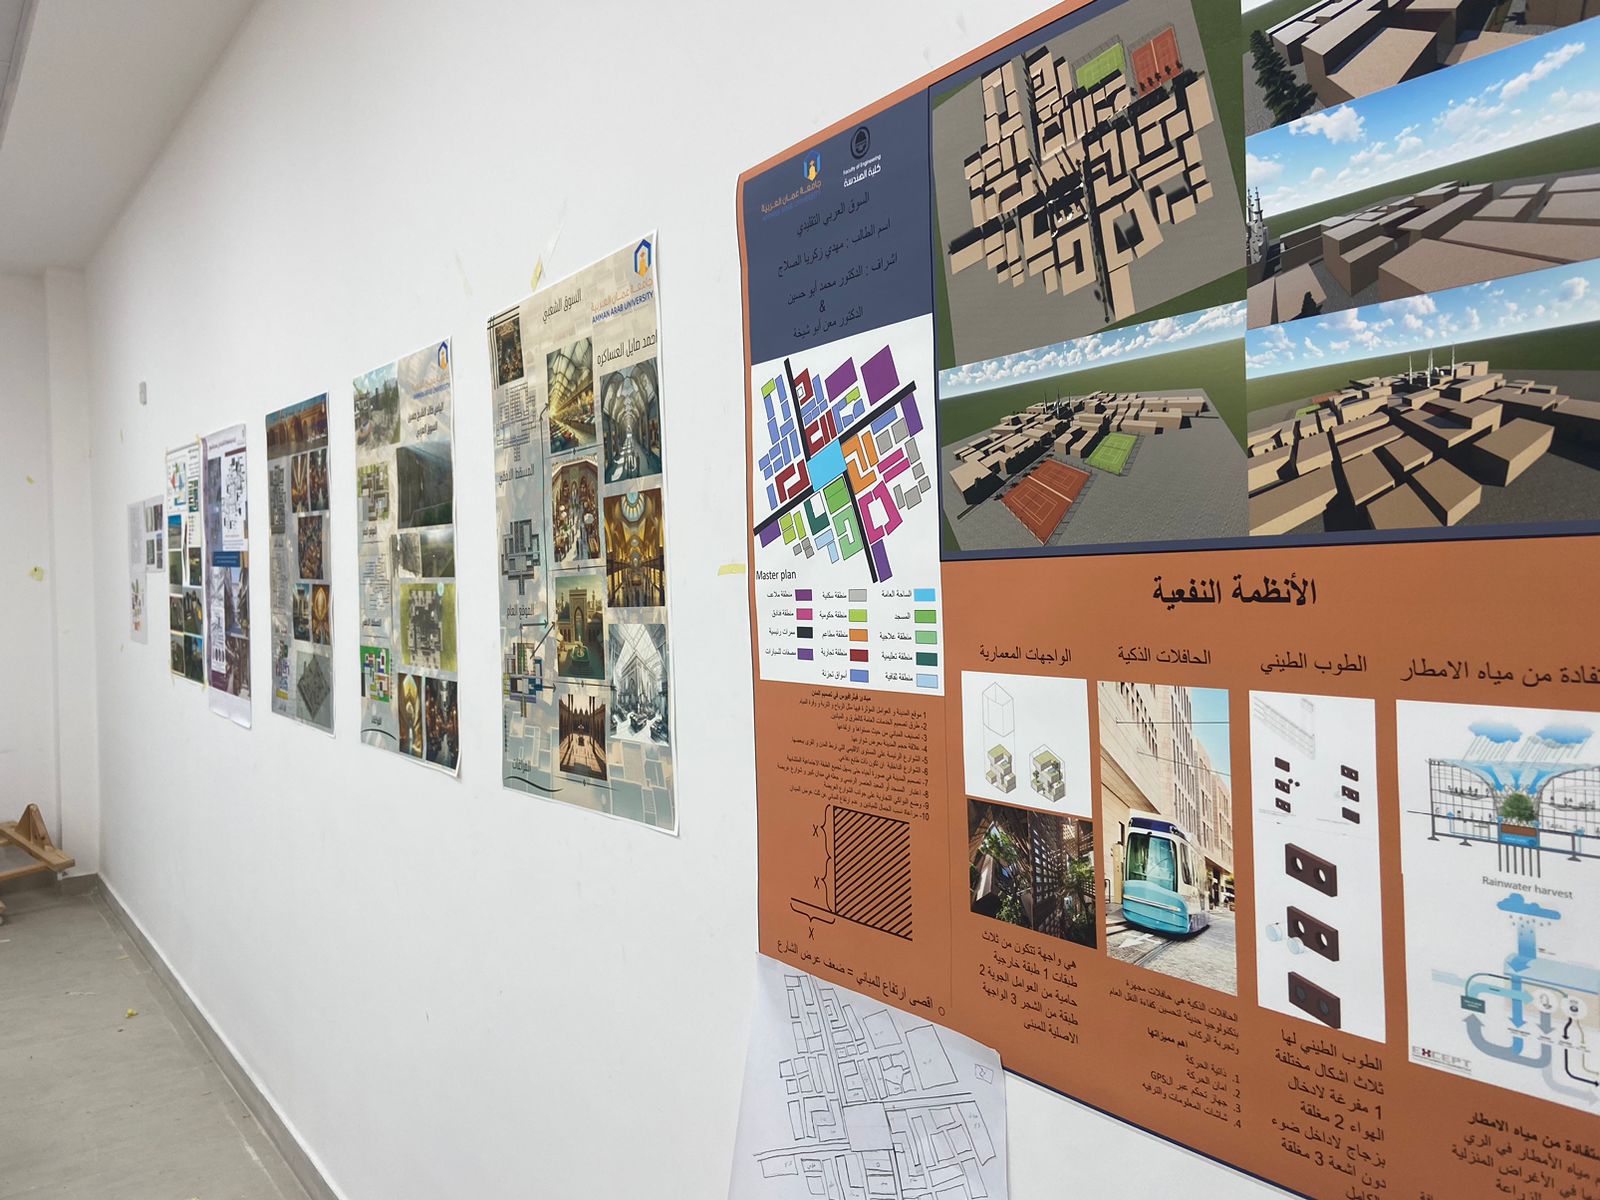 "إحياء قيم العمارة التقليدية في تصميم الأسواق" دورة تدريبية لطلبة "عمان العربية"1